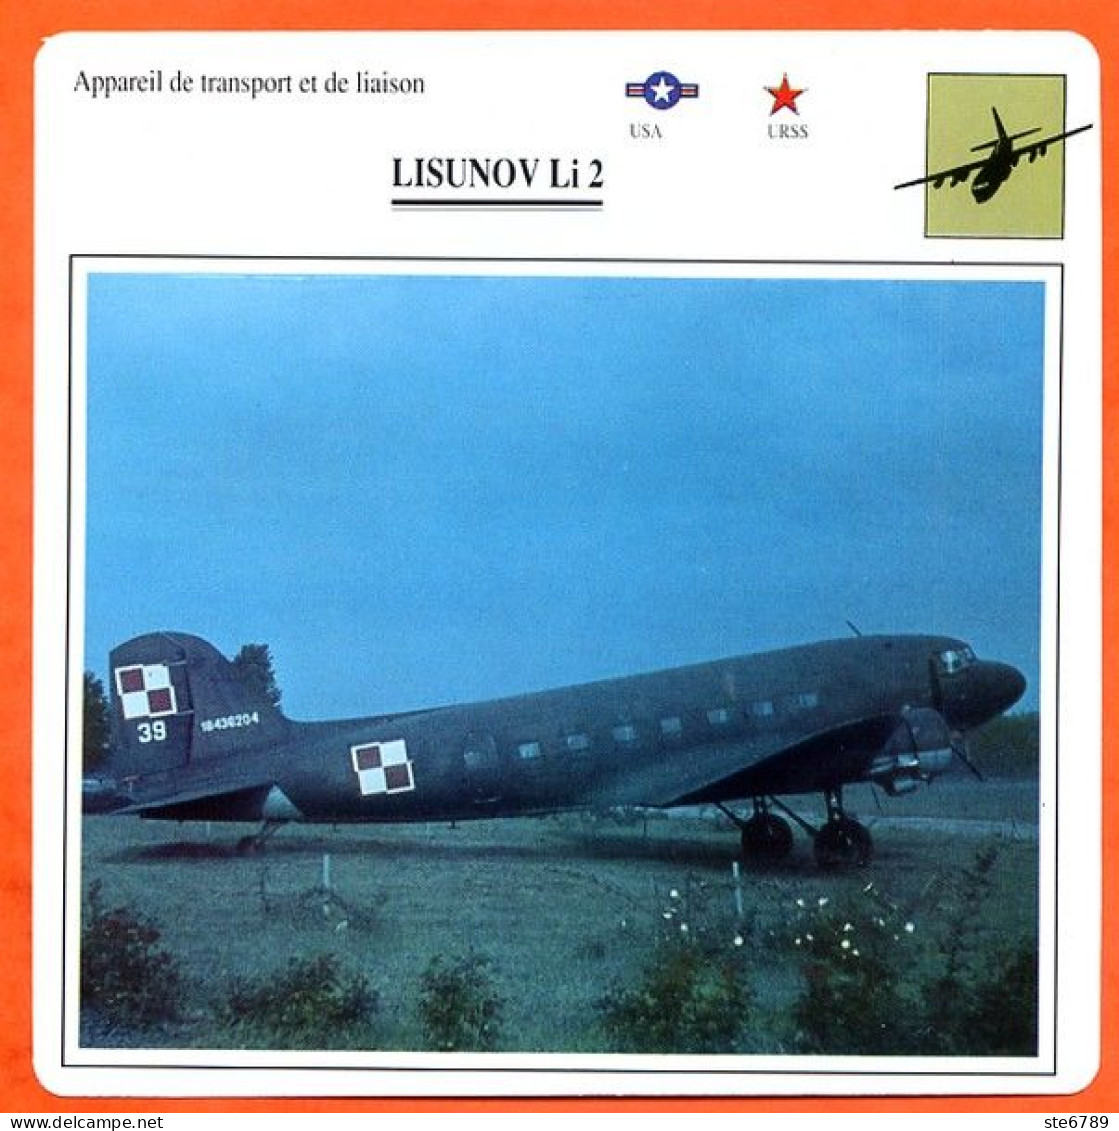 Fiche Aviation LISUNOV Li 2 / Avion Transport Et Liaison USA URSS Avions - Aerei